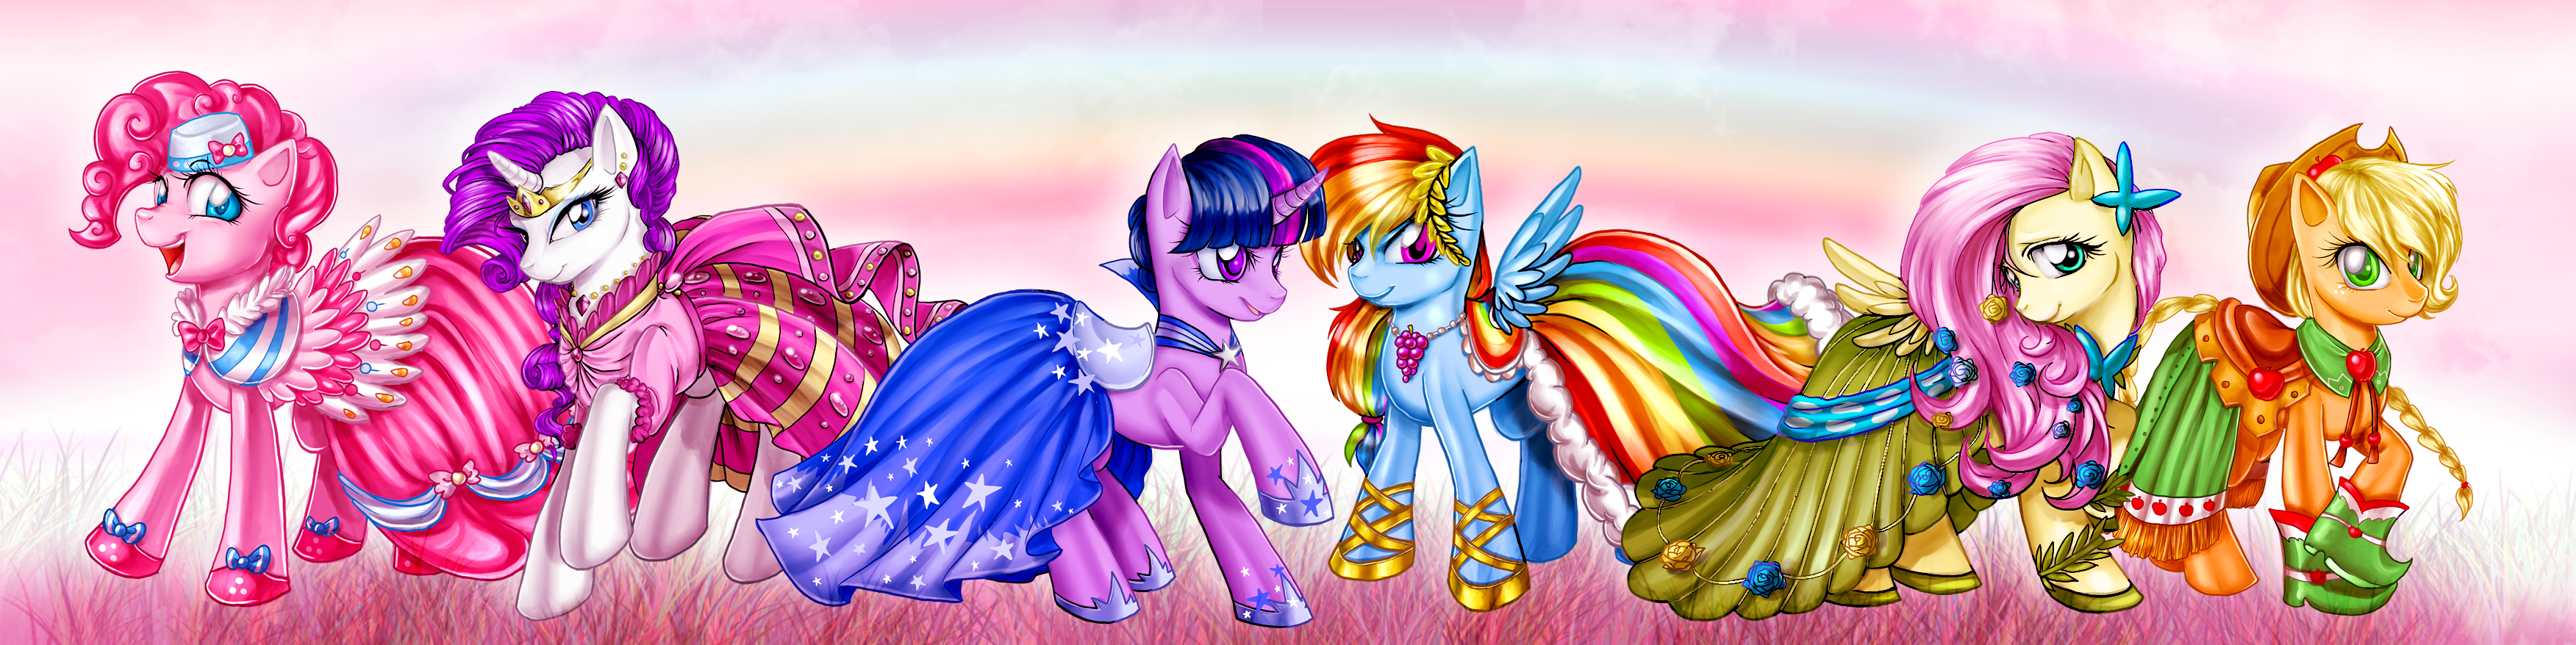 Applejack My Little Pony Fluttershy My Little Pony Pinkie Pie Rainbow Dash Rarity My Little Pony Twi 3504x878